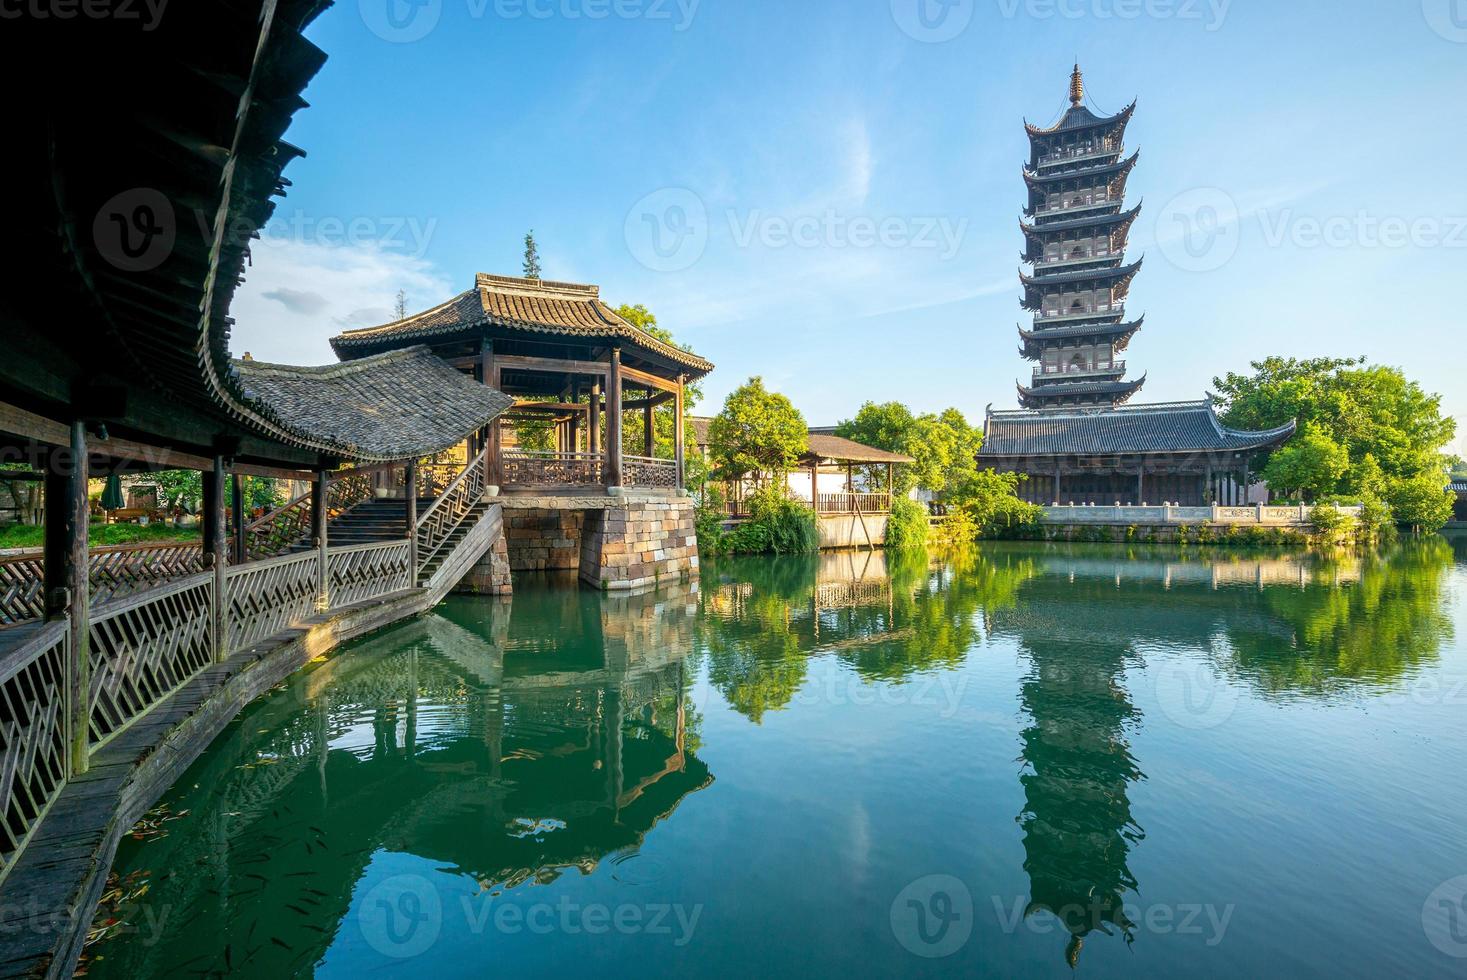 bailian tempel i wuzhen, en historisk naturskön stad i Kina foto